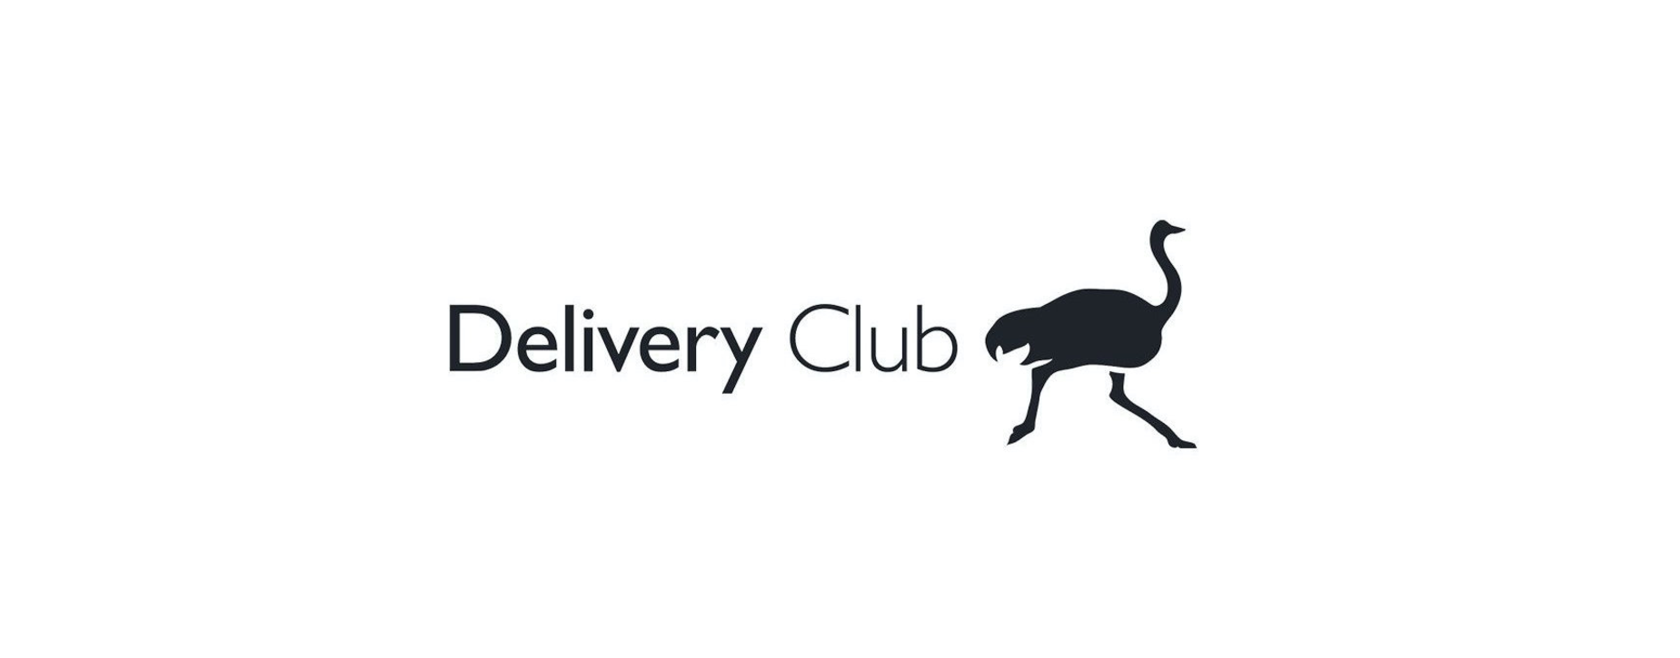 Про бадю. Значок Деливери. Delivery Club лого. Страус Деливери. Деливери клаб на прозрачном фоне.